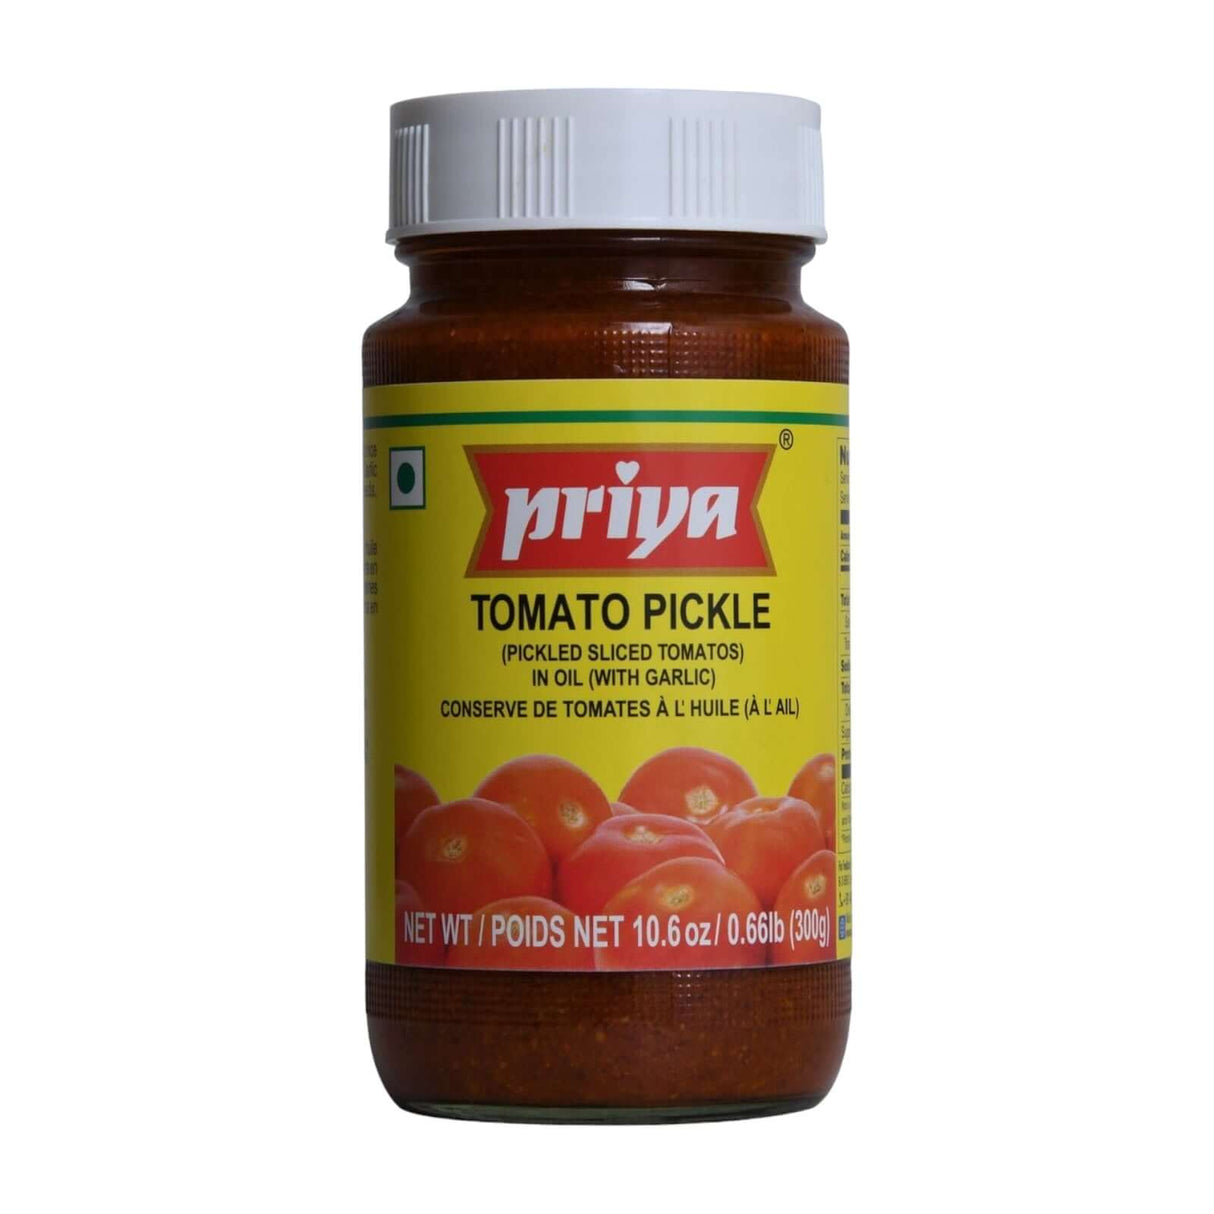 Priya Tomato Pickle in Oil (with Garlic)